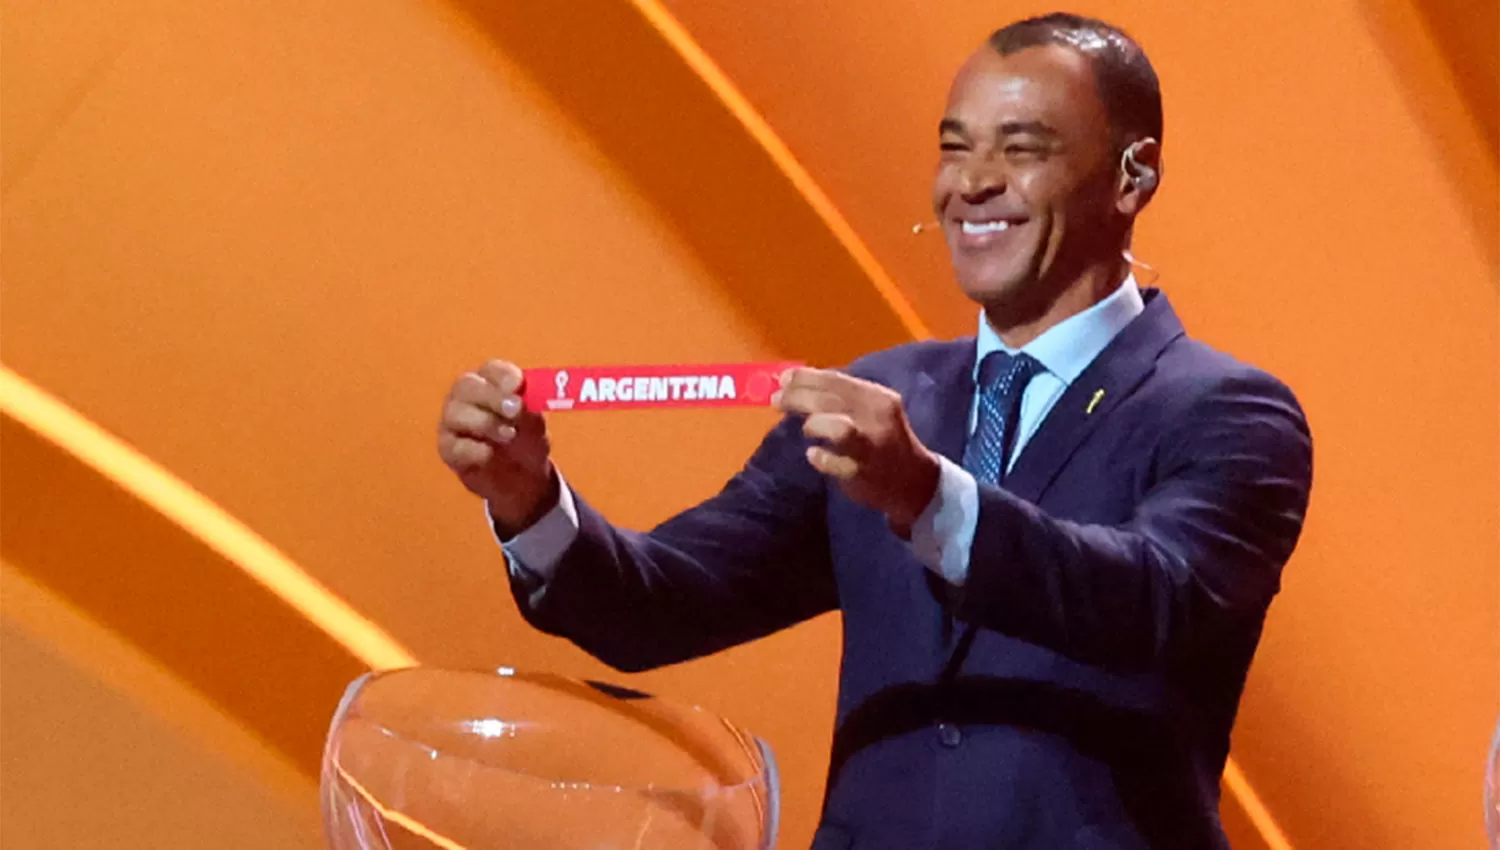 EL SORTEO. El ex lateral brasileño Cafu muestra el cartel con Argentina durante el sorteo de Qatar 2022.